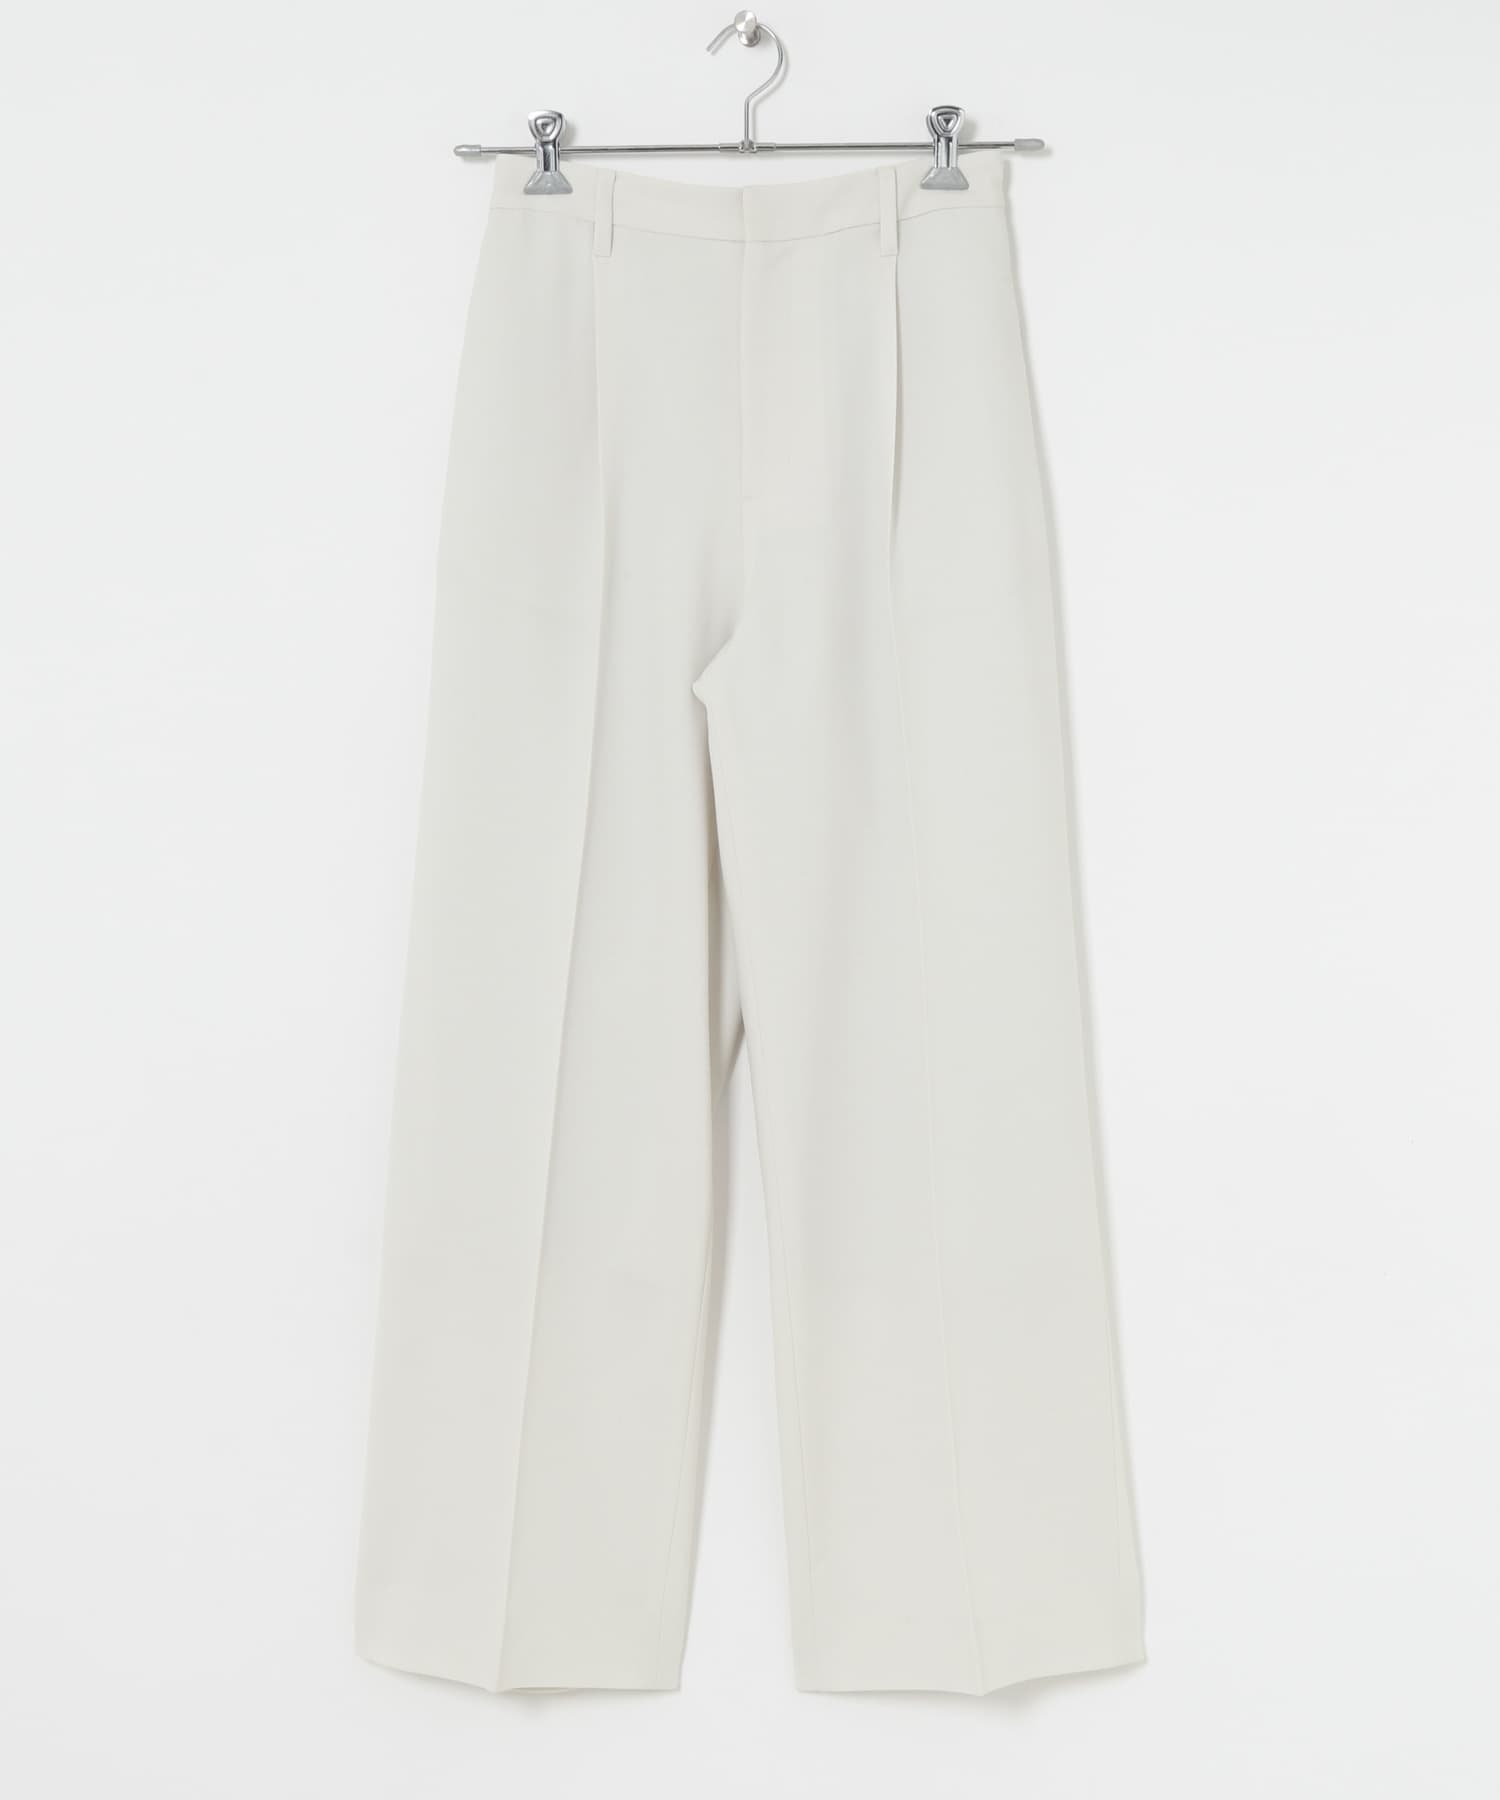 中央壓線直筒褲(米色-38-OFF WHITE)